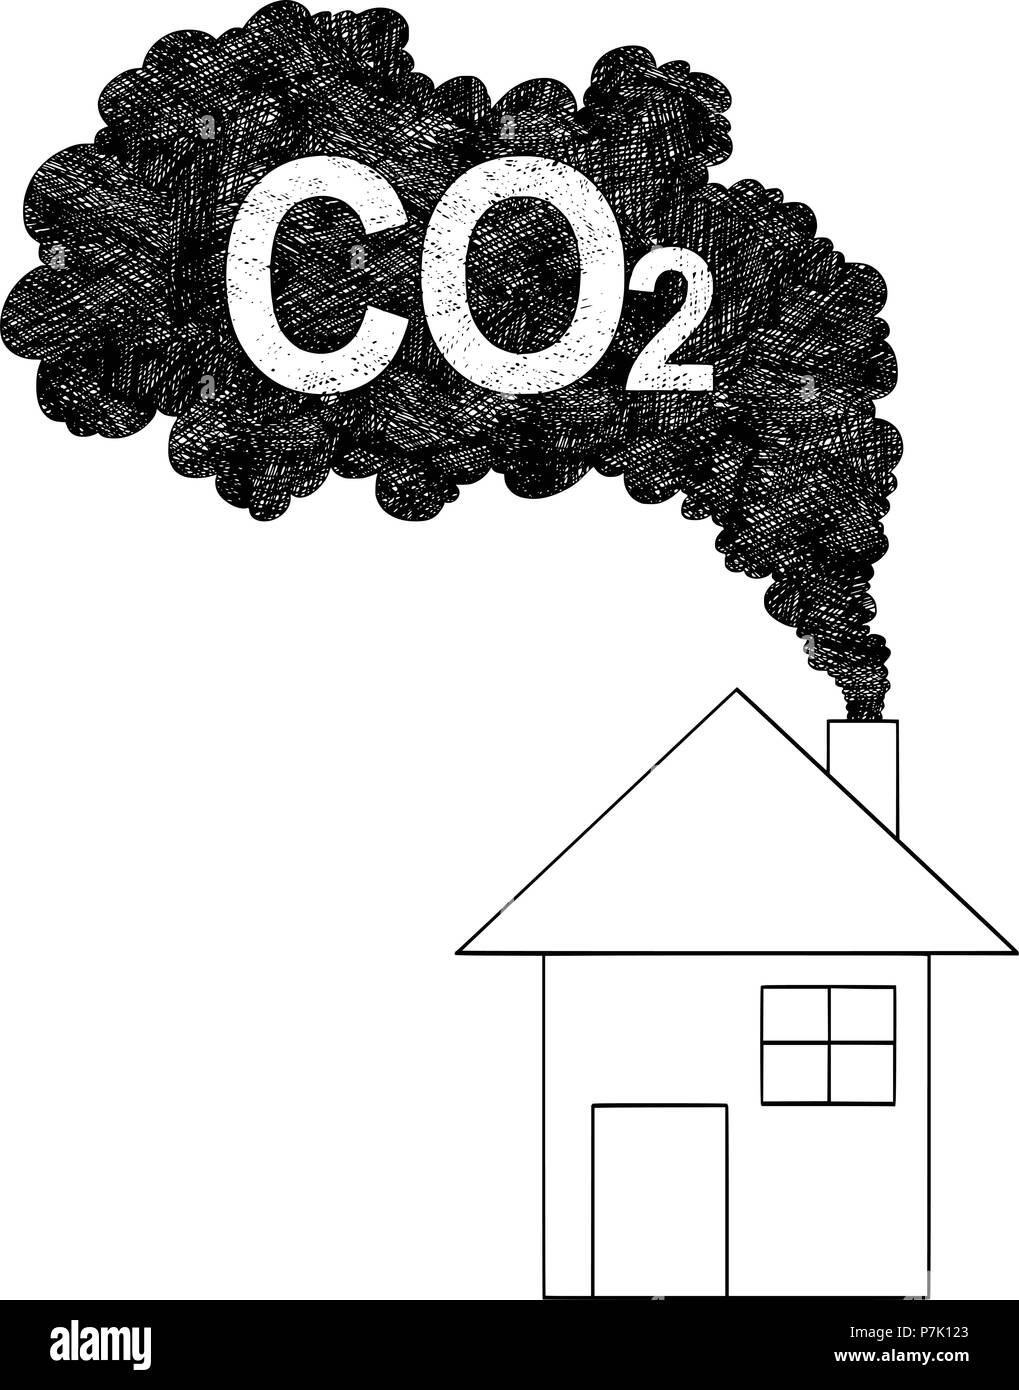 Dessin Artistique vecteur Illustration de fumée à la cheminée de la Chambre, le dioxyde de carbone ou CO2 La pollution de l'air Concept Illustration de Vecteur